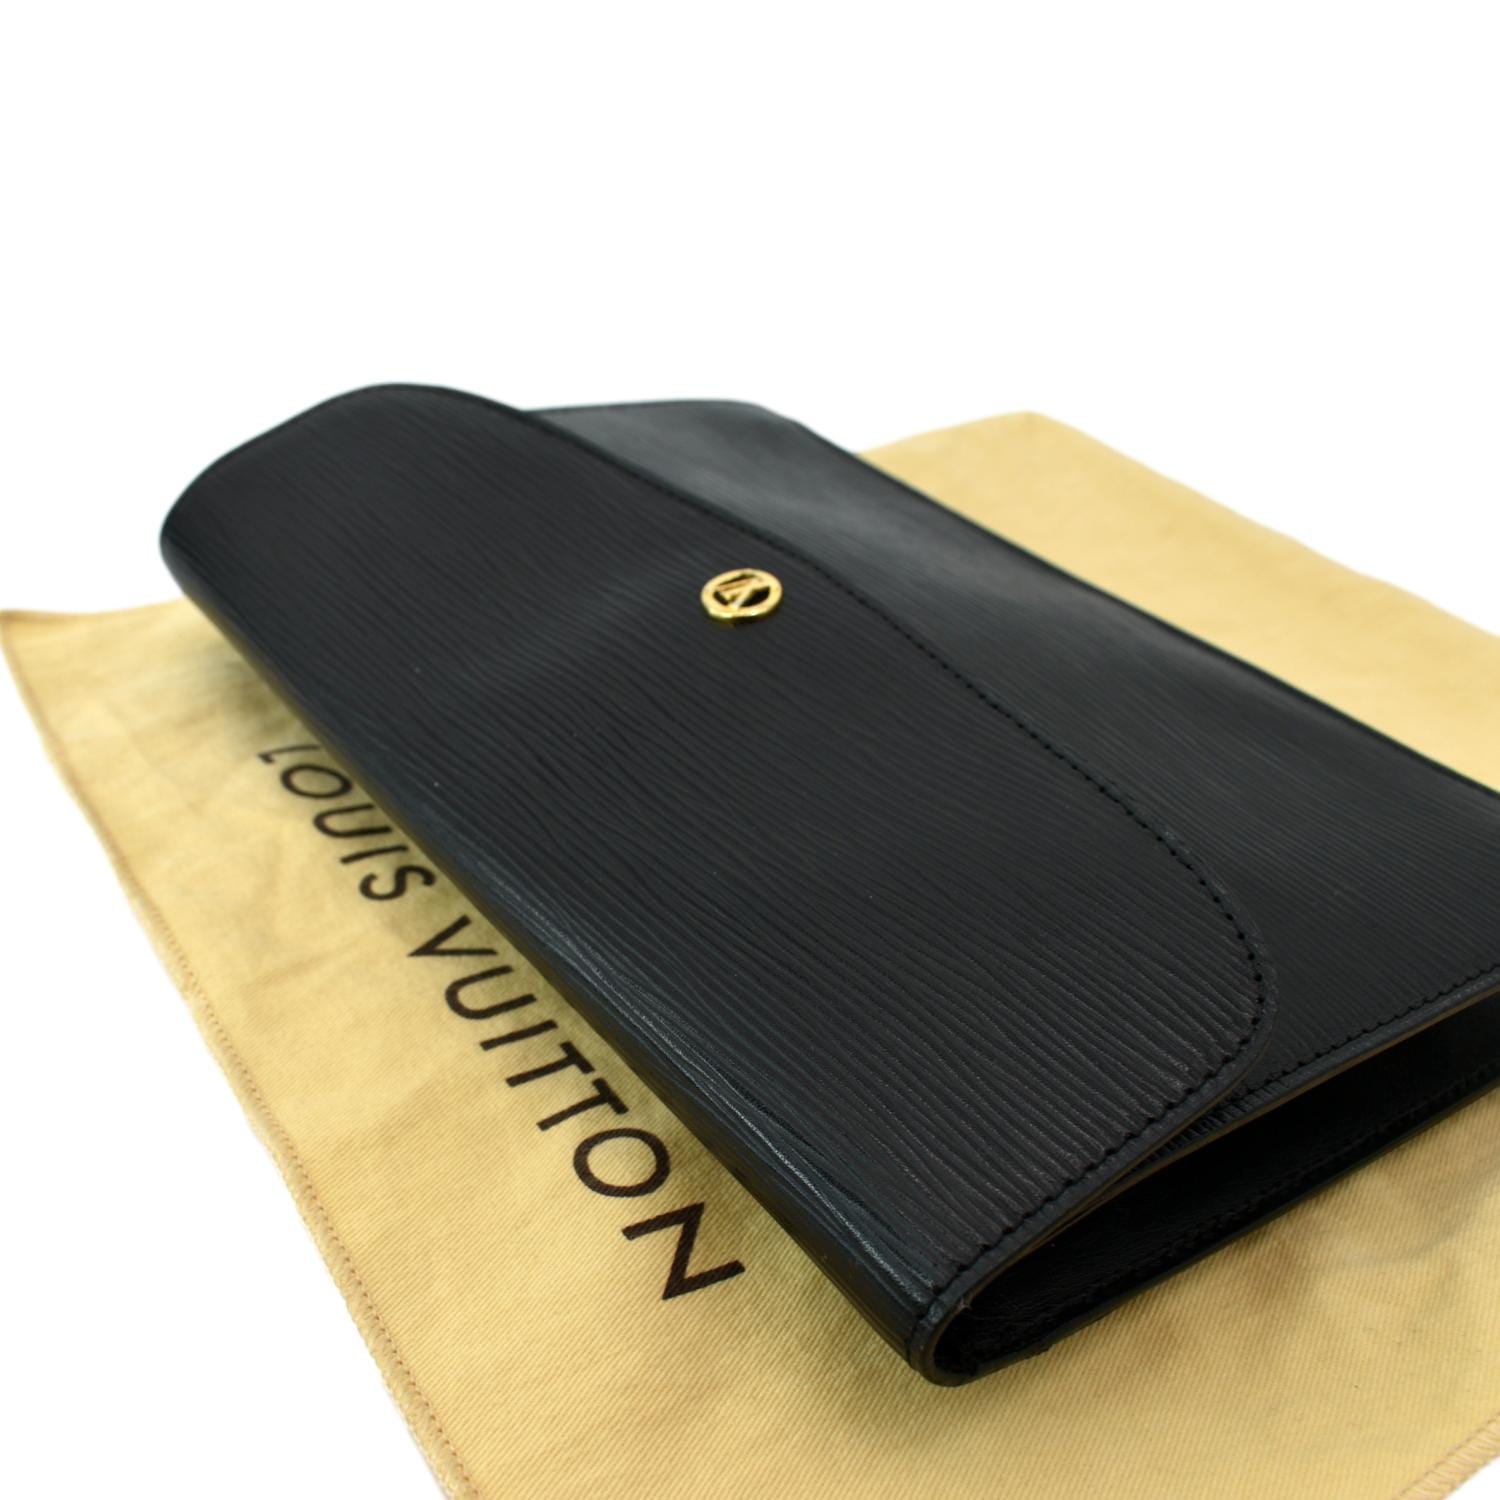 Louis Vuitton Rubis Epi Leather POCHETTE MONTAIGNE